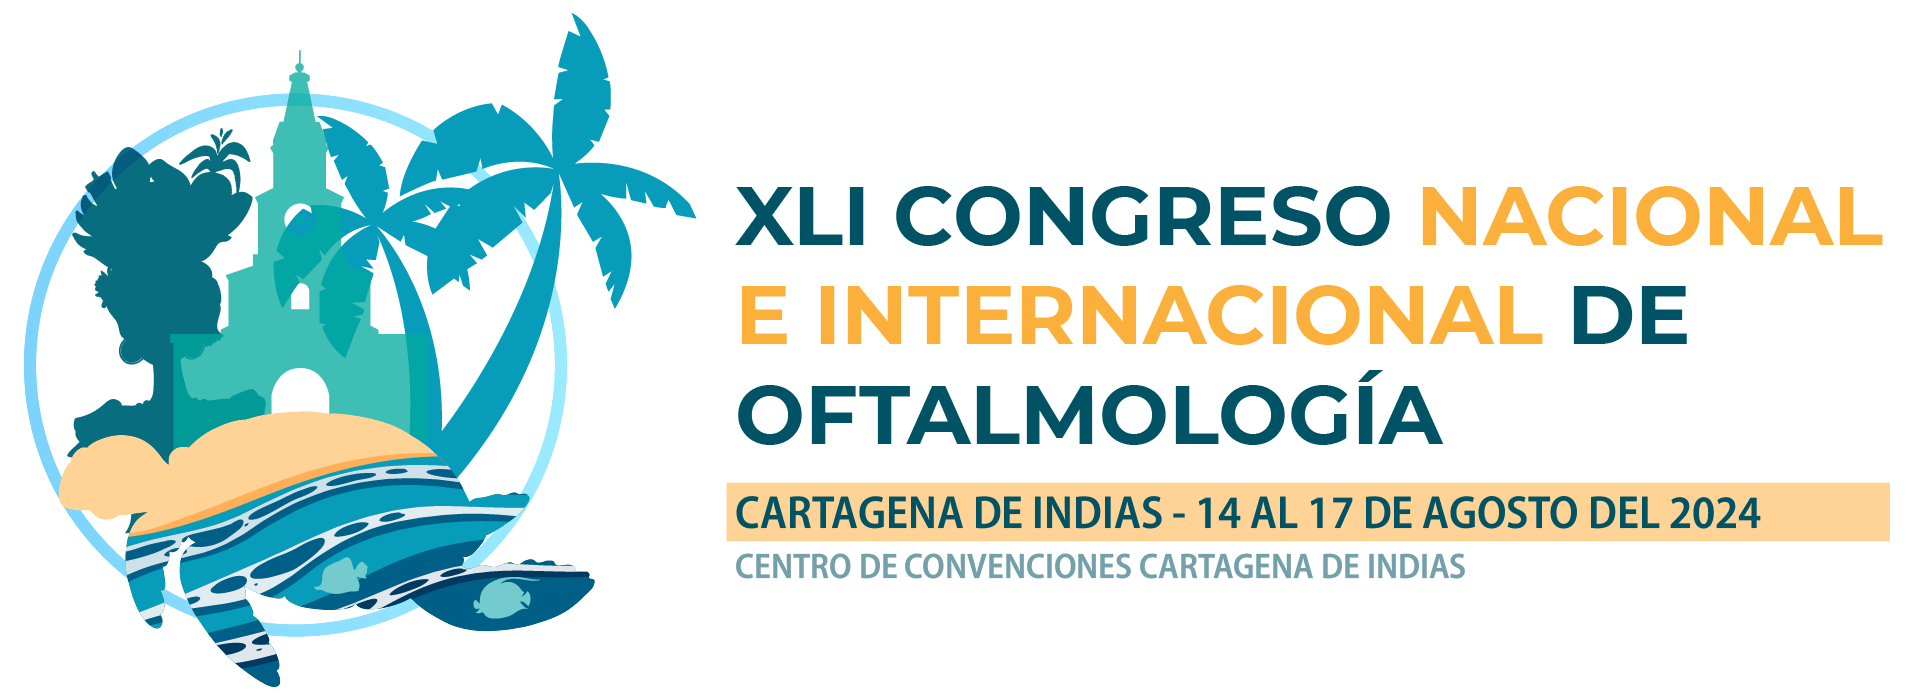 XLI CONGRESO NACIONAL E INTERNACIONAL DE OFTALMOLOGíA